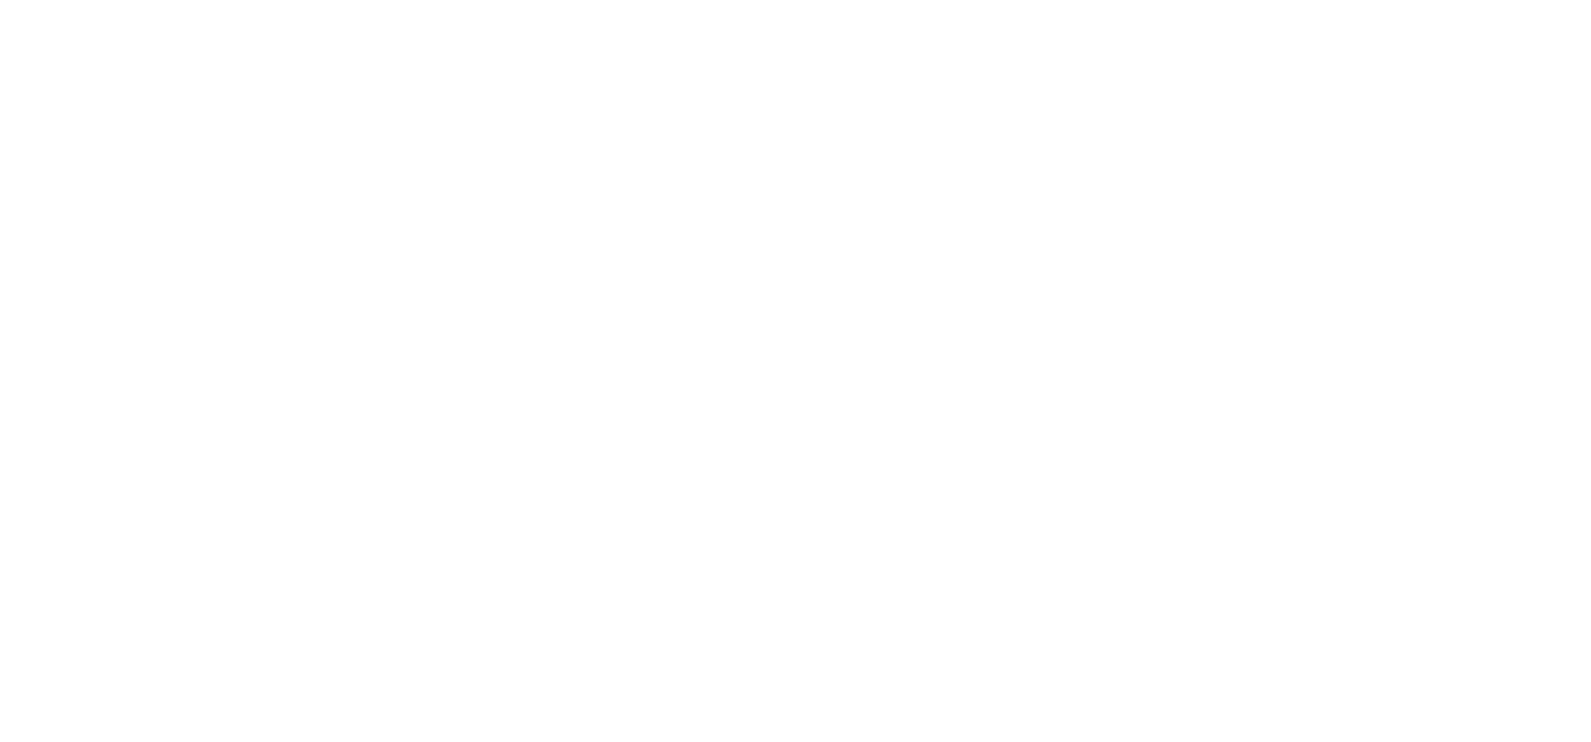 CloudPanda logo